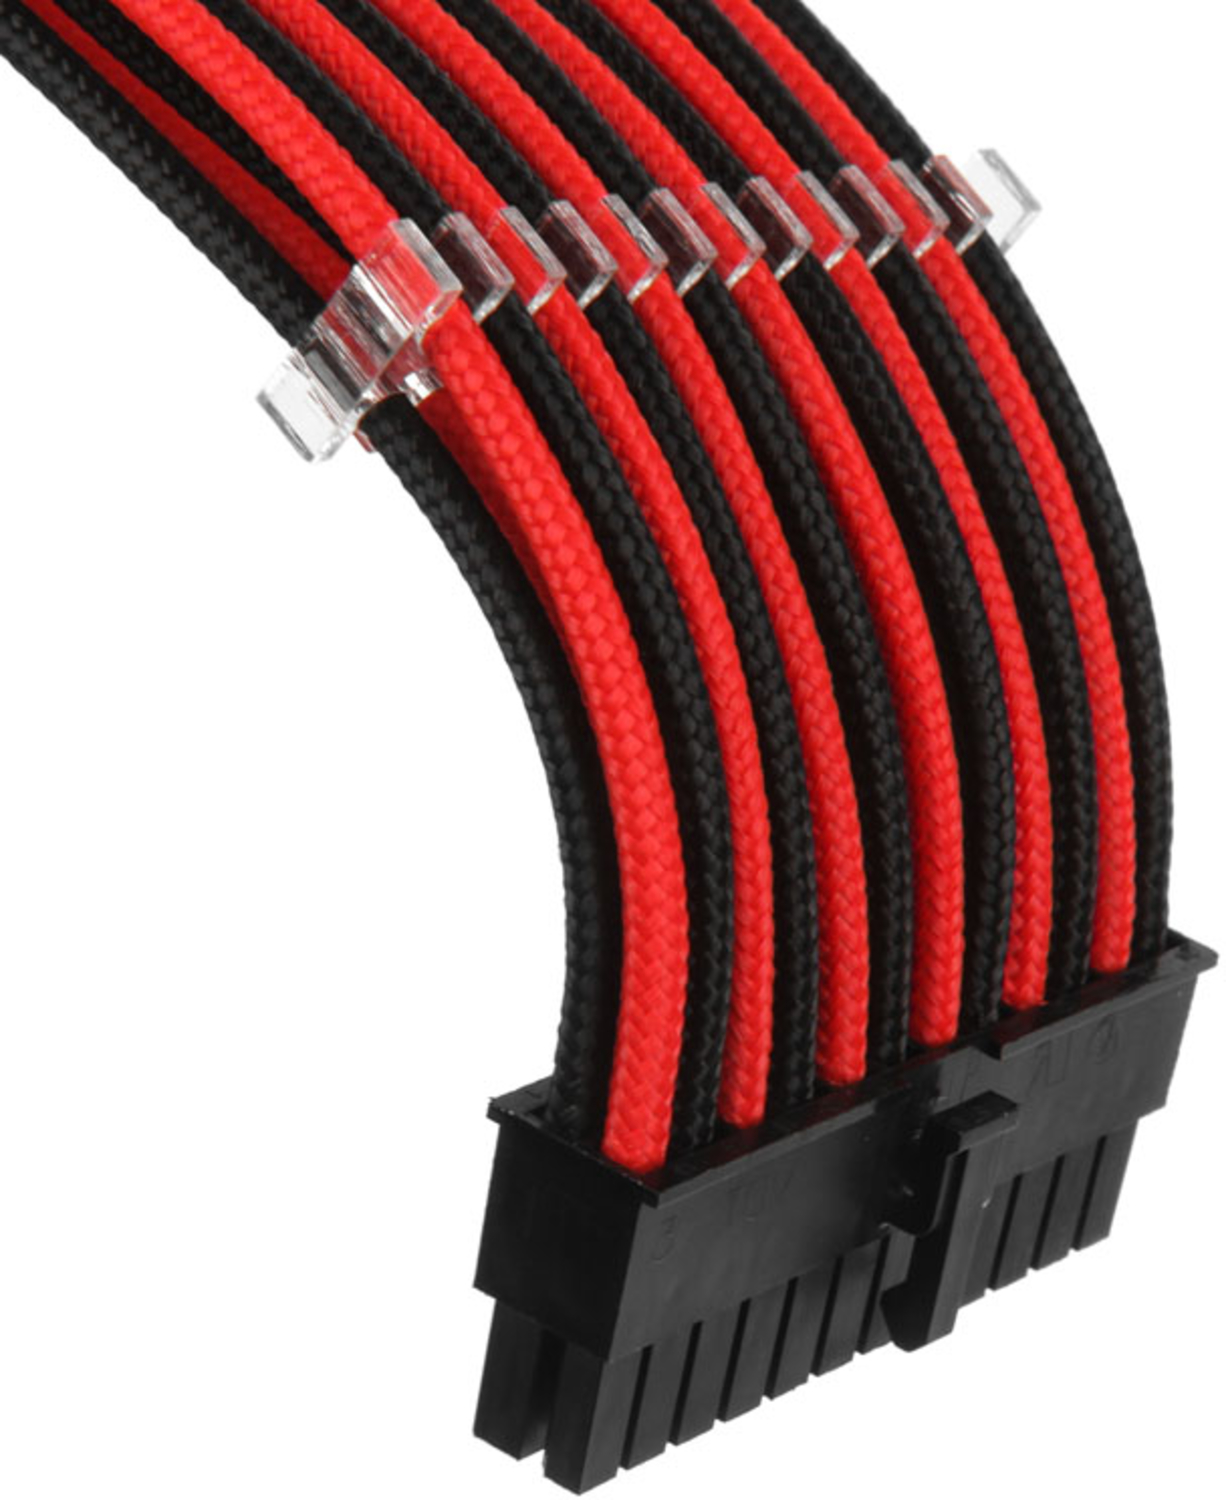 Phanteks - Kit de Expansión Phanteks Cables Sleeved 50cm Negro / Rojo